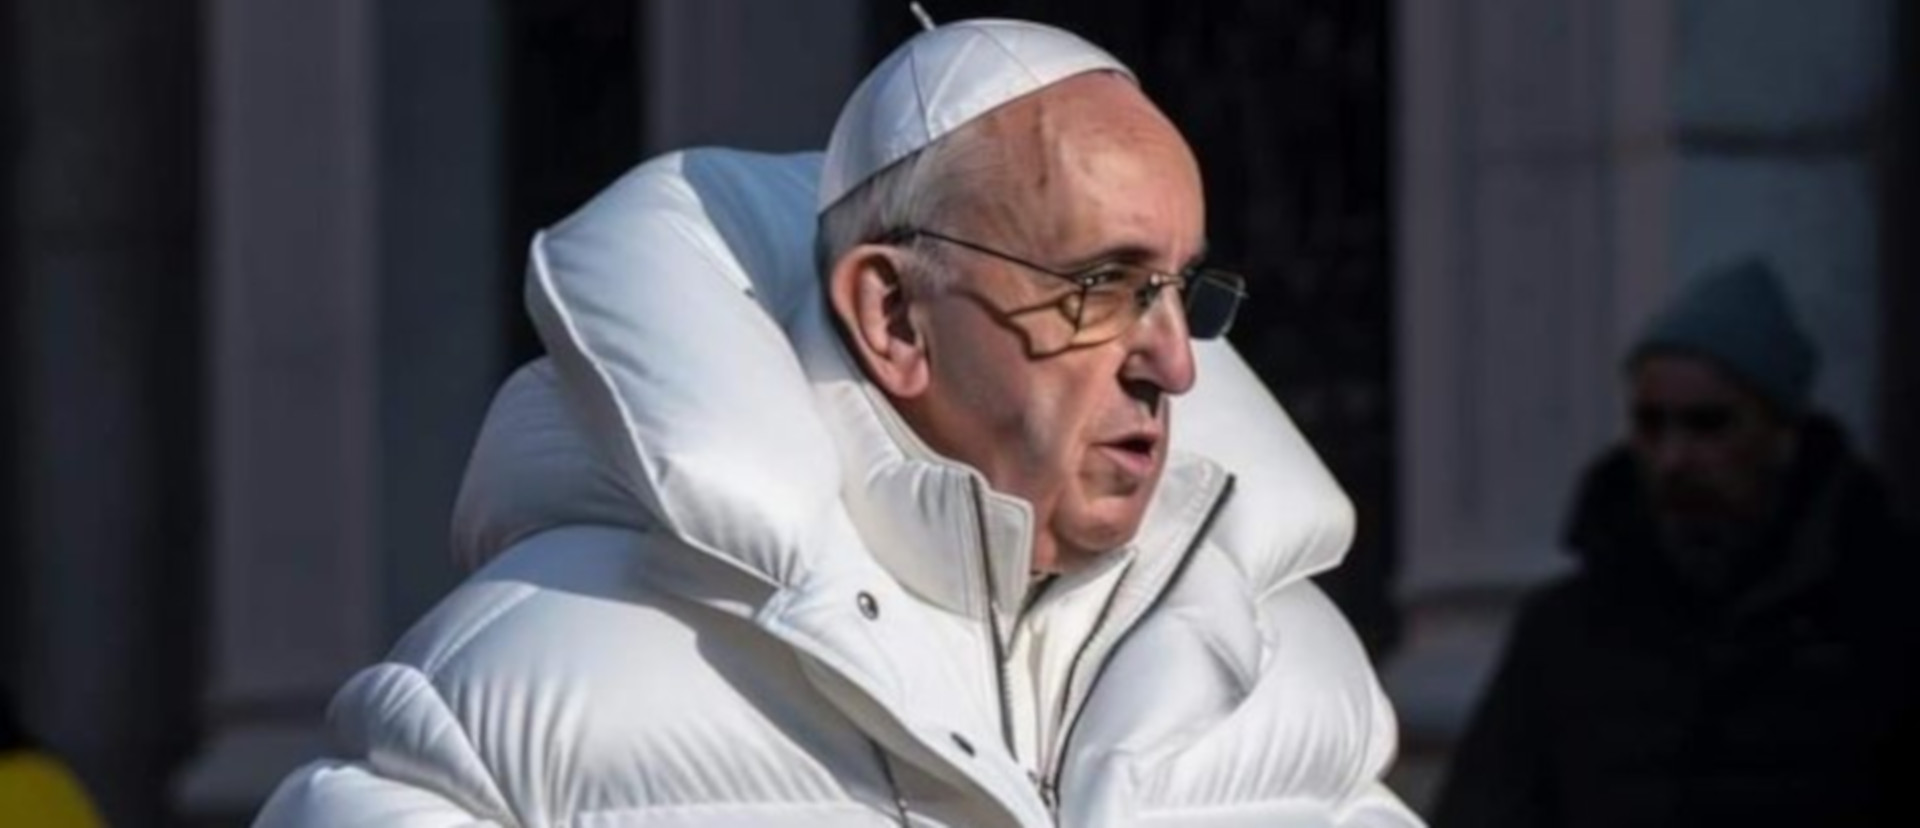 Mit künstlicher Intelligenz erstellt: Papst in Daunenjacke